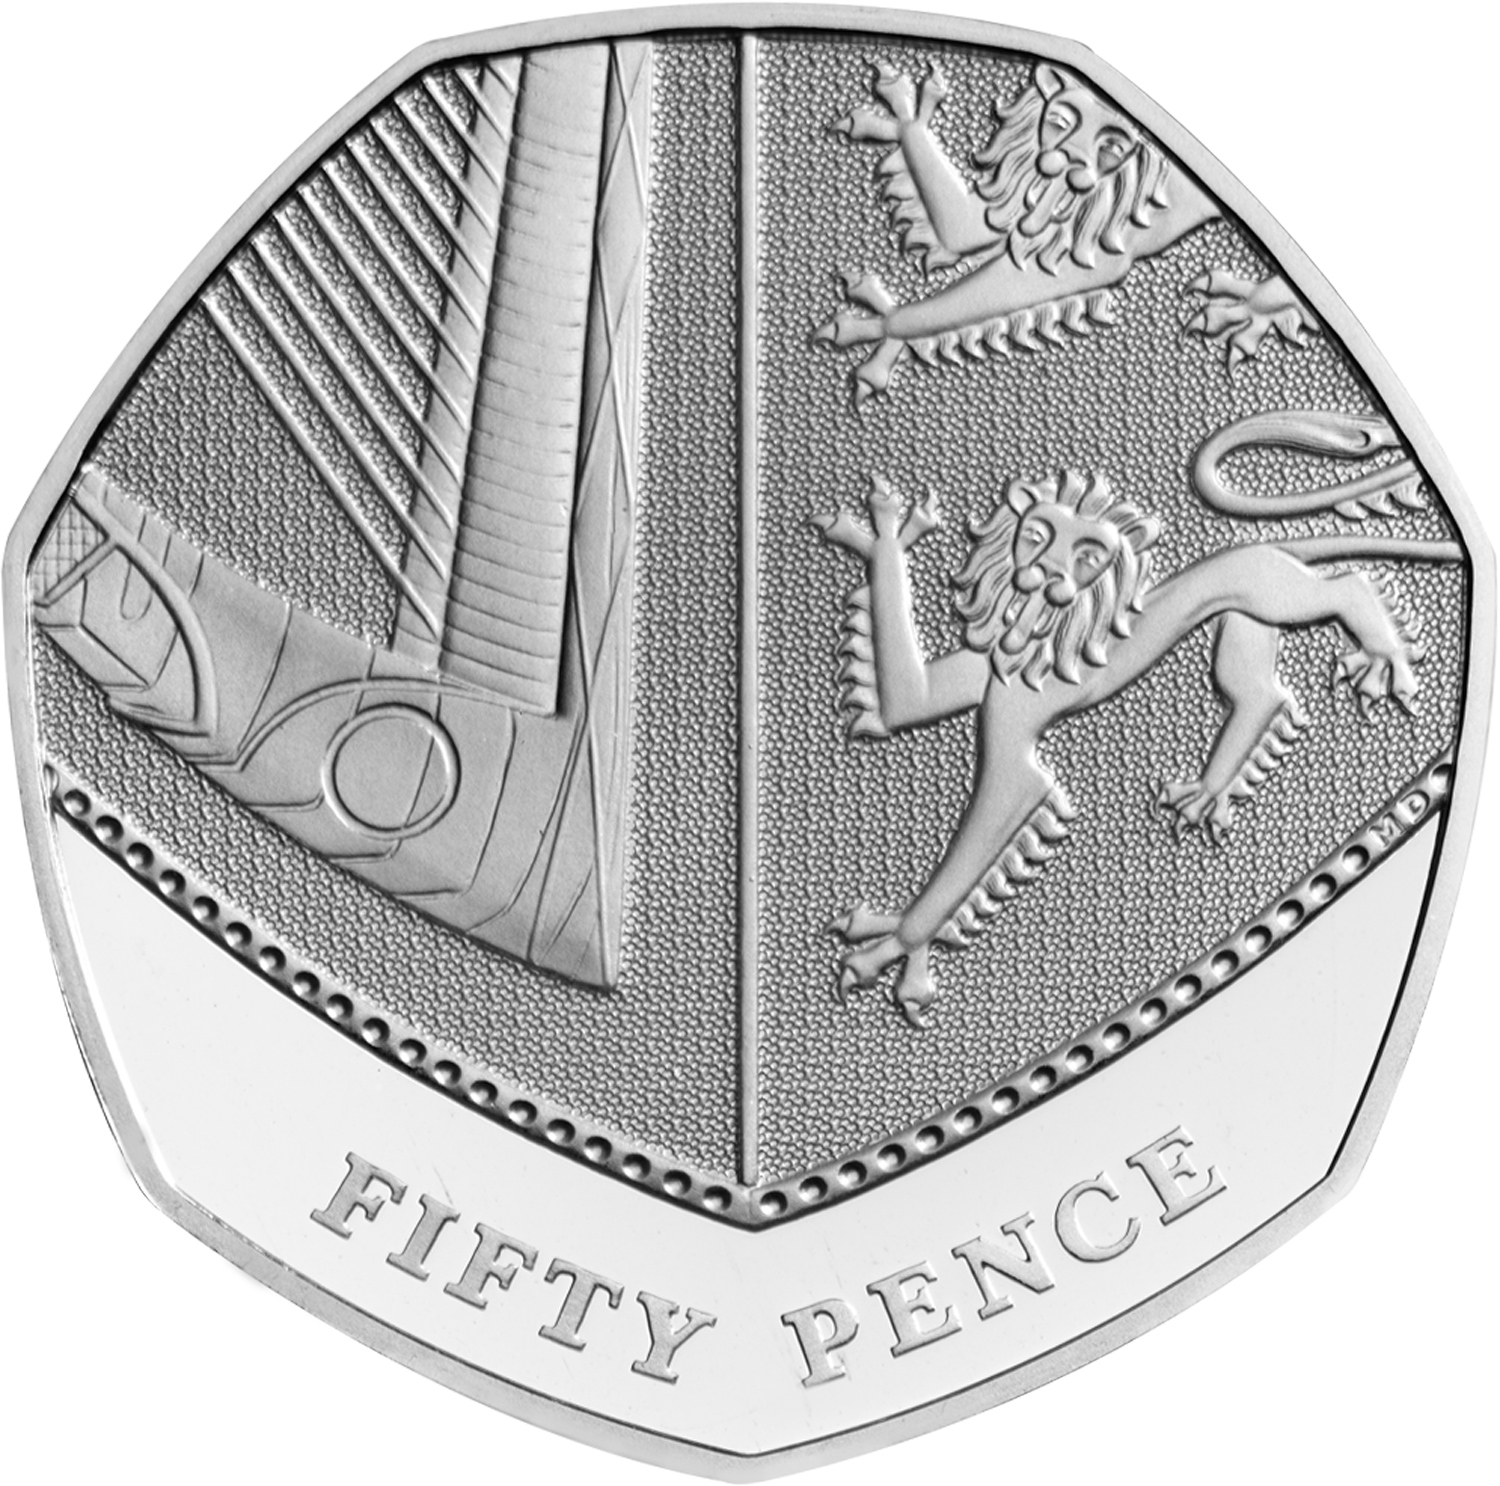 50p Coin